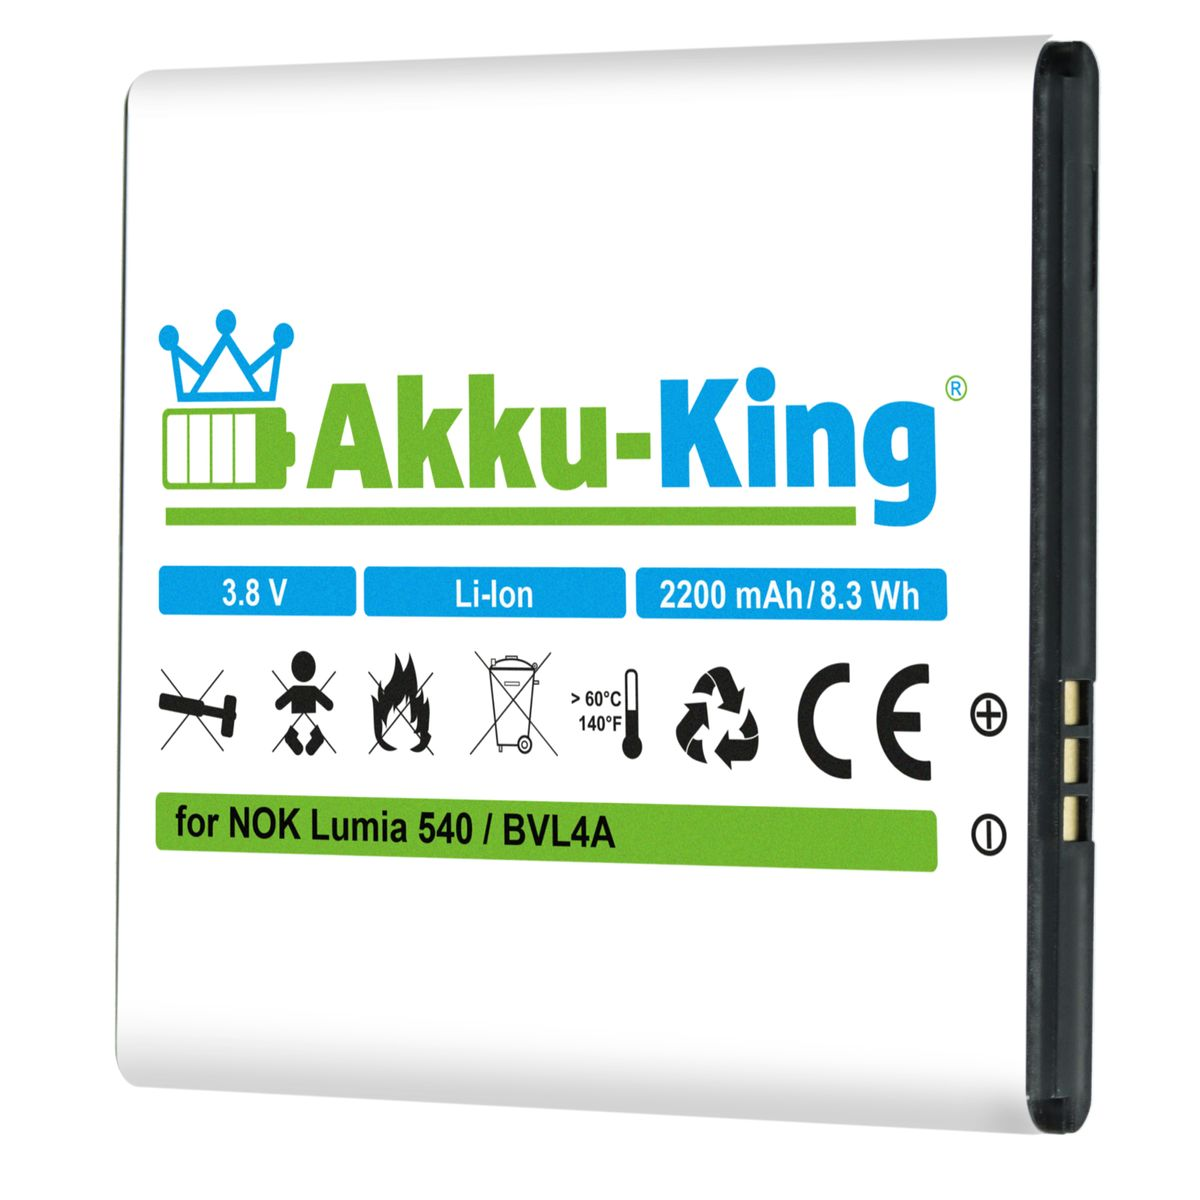 kompatibel Nokia 3.8 2200mAh Akku Volt, Li-Ion AKKU-KING mit BV-L4A Handy-Akku,